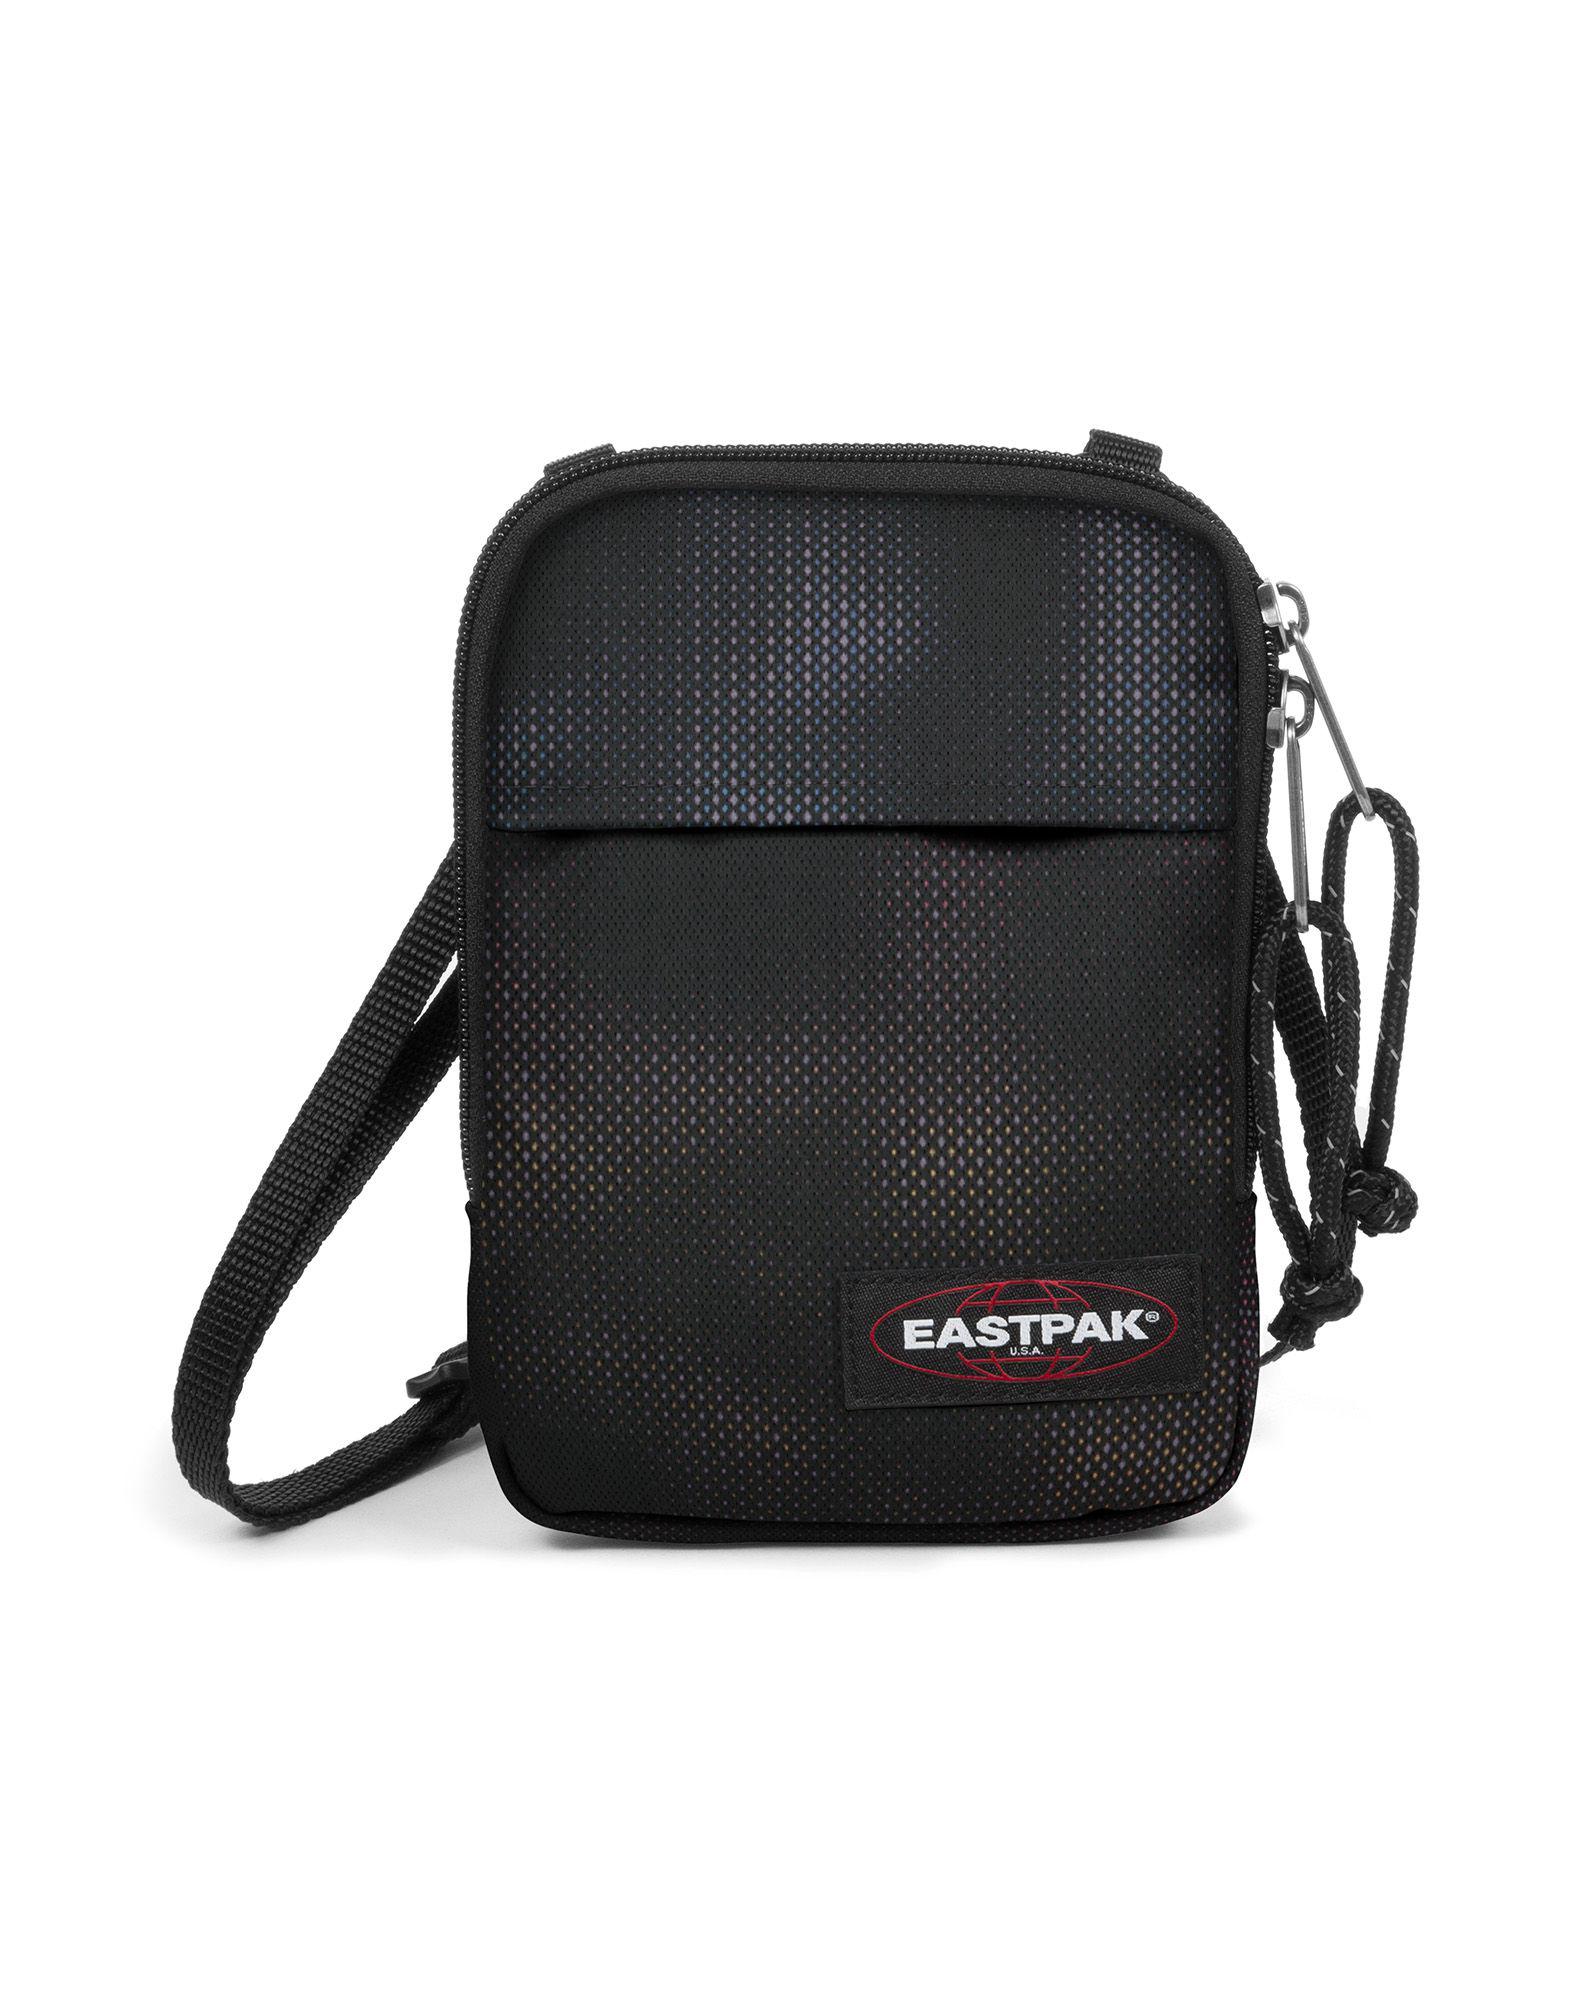 Eastpak Synthetic Cross-body Bag in Black - Lyst